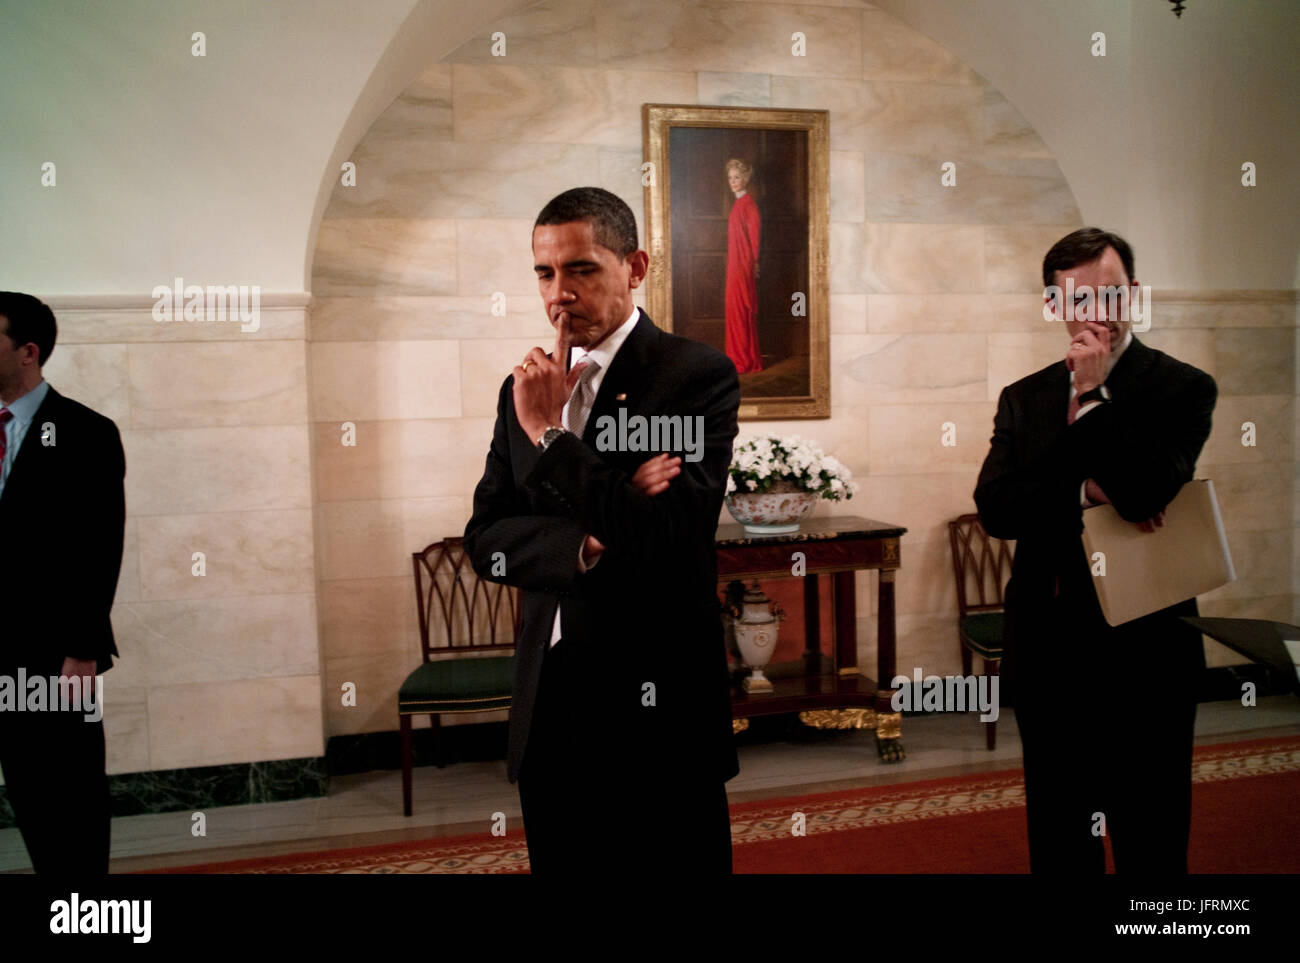 Le président Barack Obama reflète tout en se tenant dans le couloir du rez-de-chaussée de la Maison Blanche, avant d'aborder la presse au sujet des services financiers 25/02/09. Photo Officiel de la Maison Blanche par Pete Souza Banque D'Images